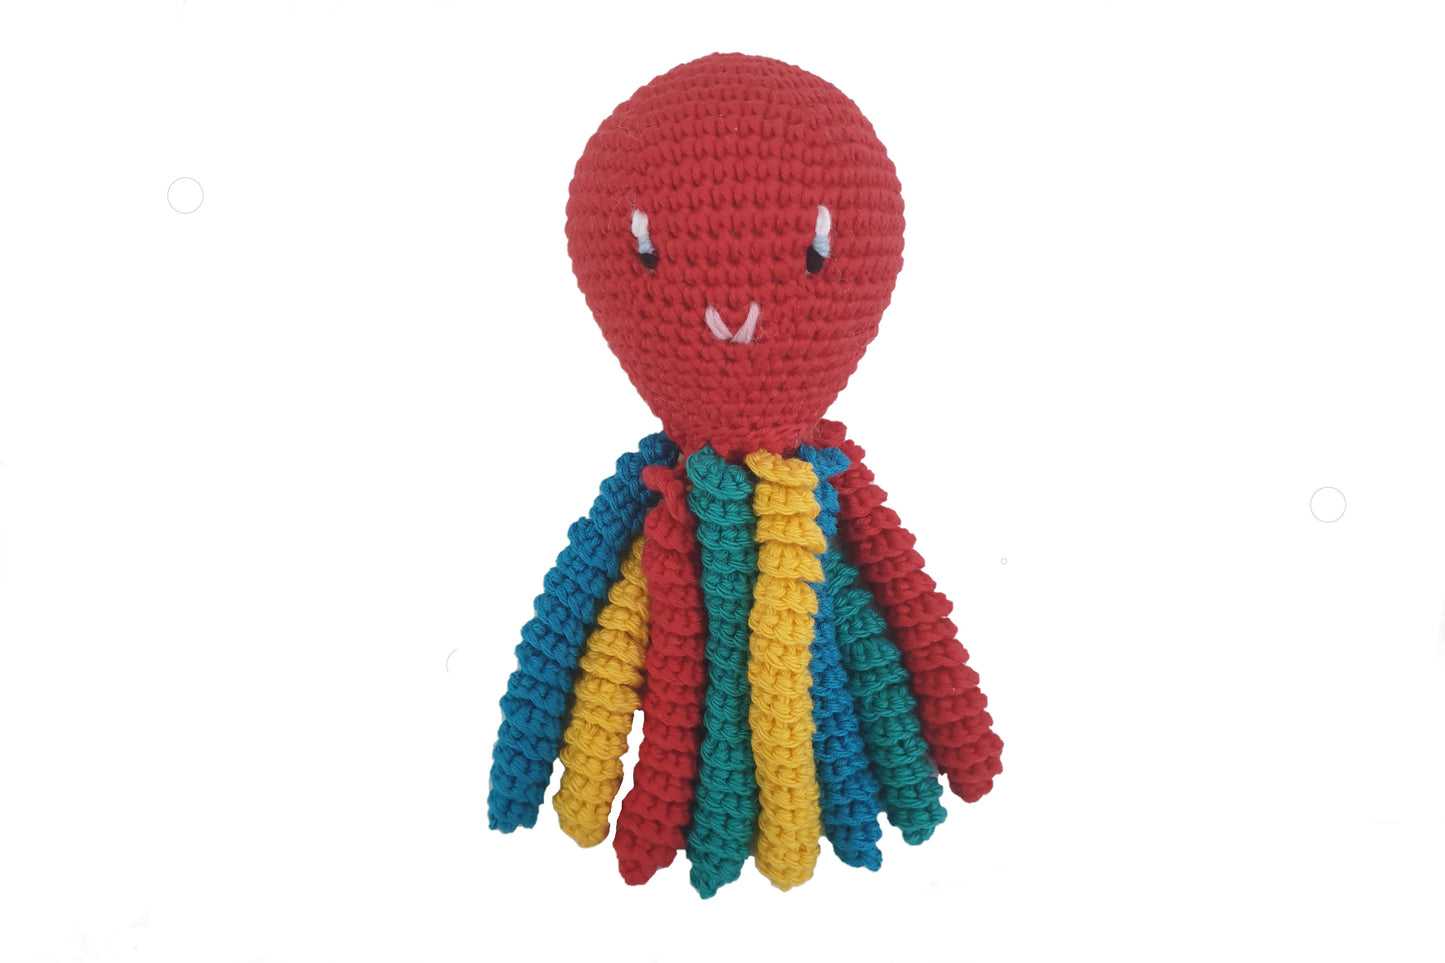 Pulpo de crochet en color rojo - multicolor.